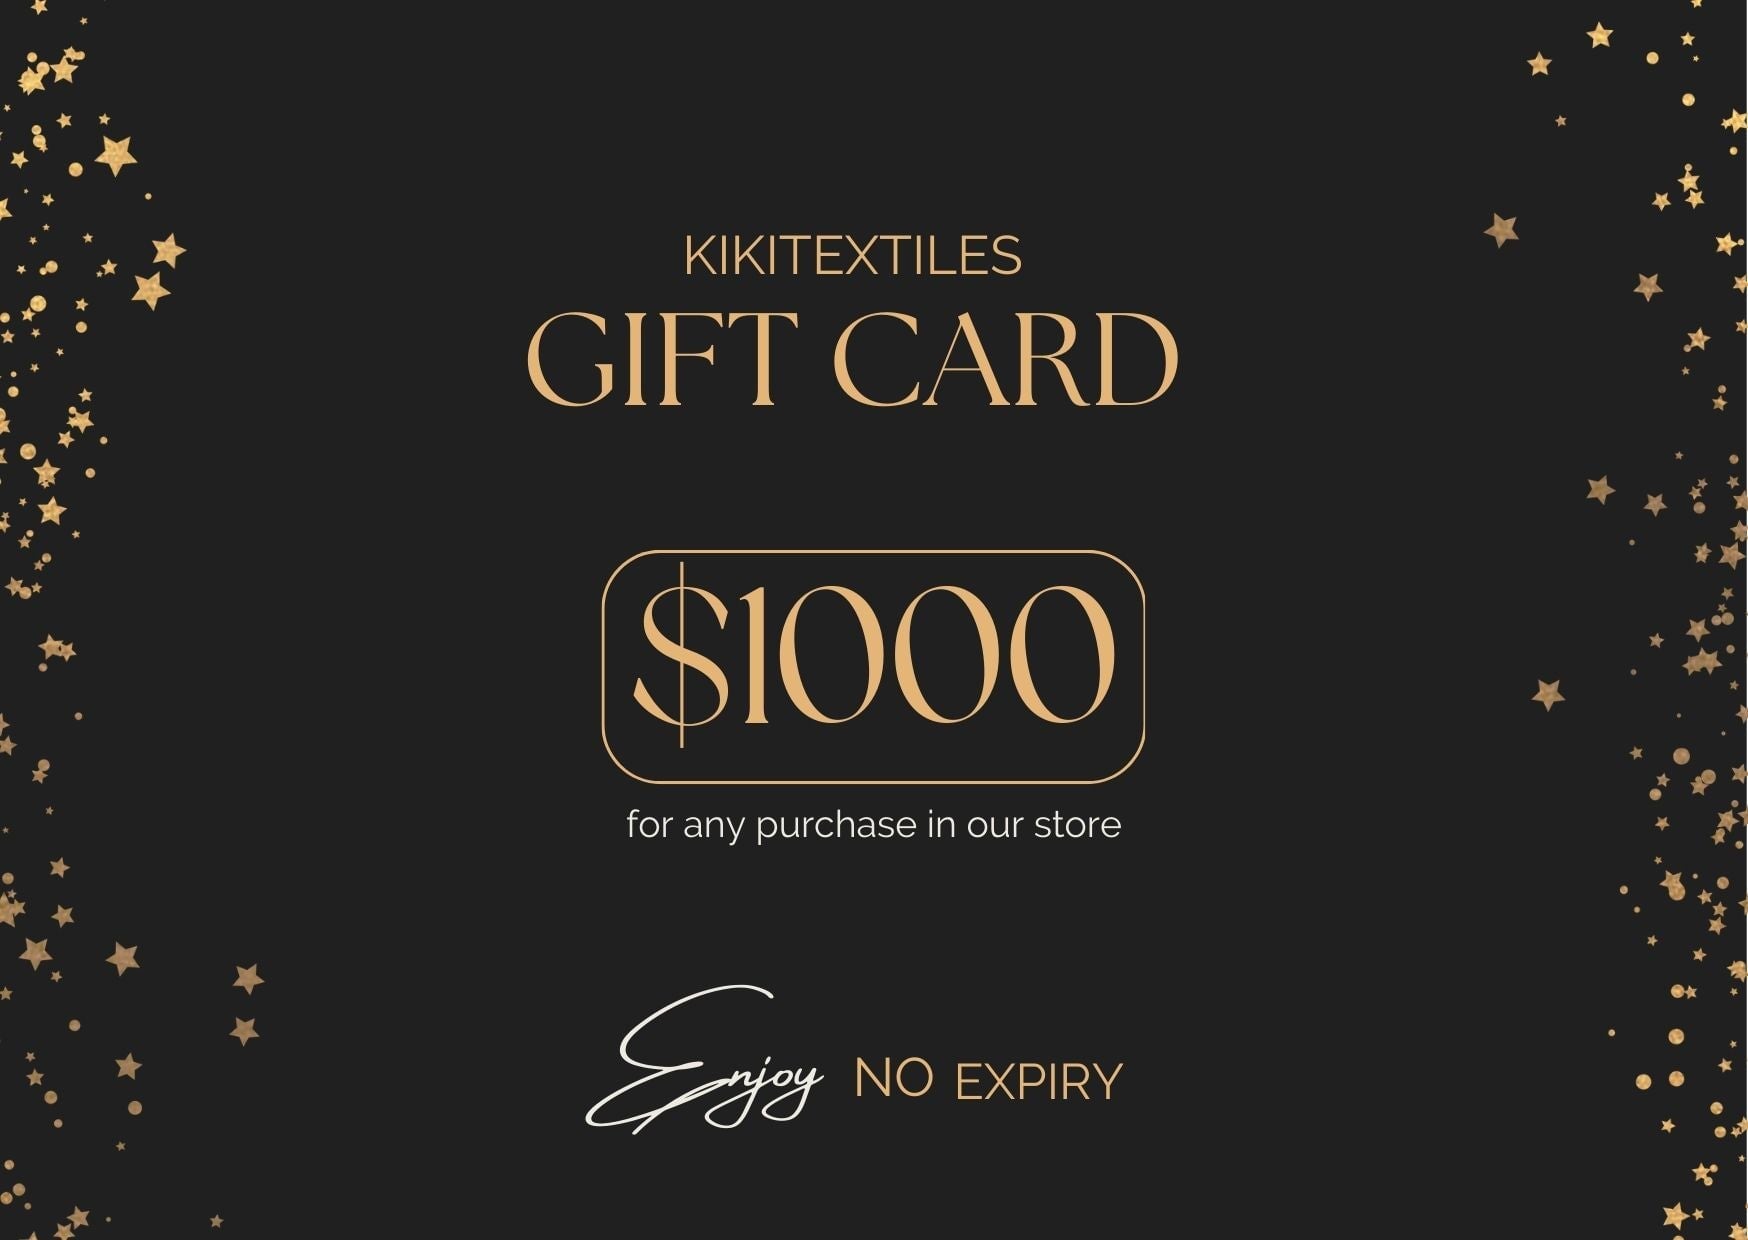 KIKITextiles Gift Card